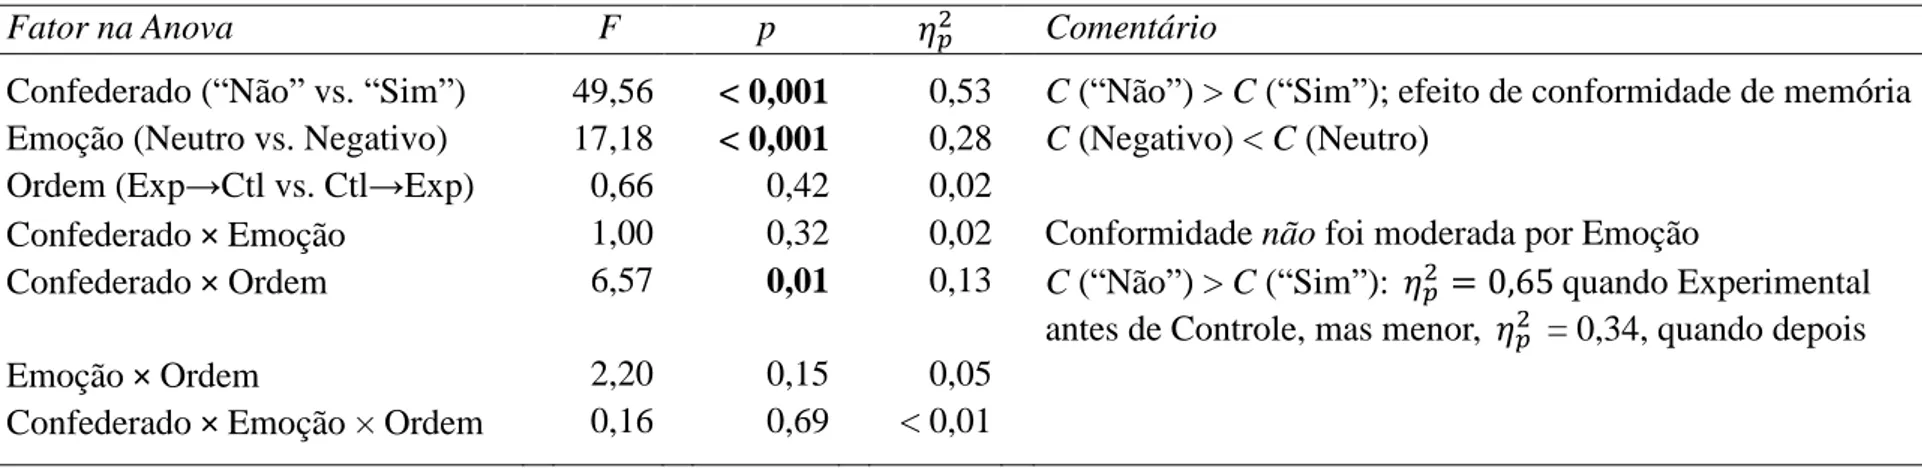 Tabela C6. Anova em d´ somente para a condição Experimental no Experimento 2. Resposta do confederado incluída como fator